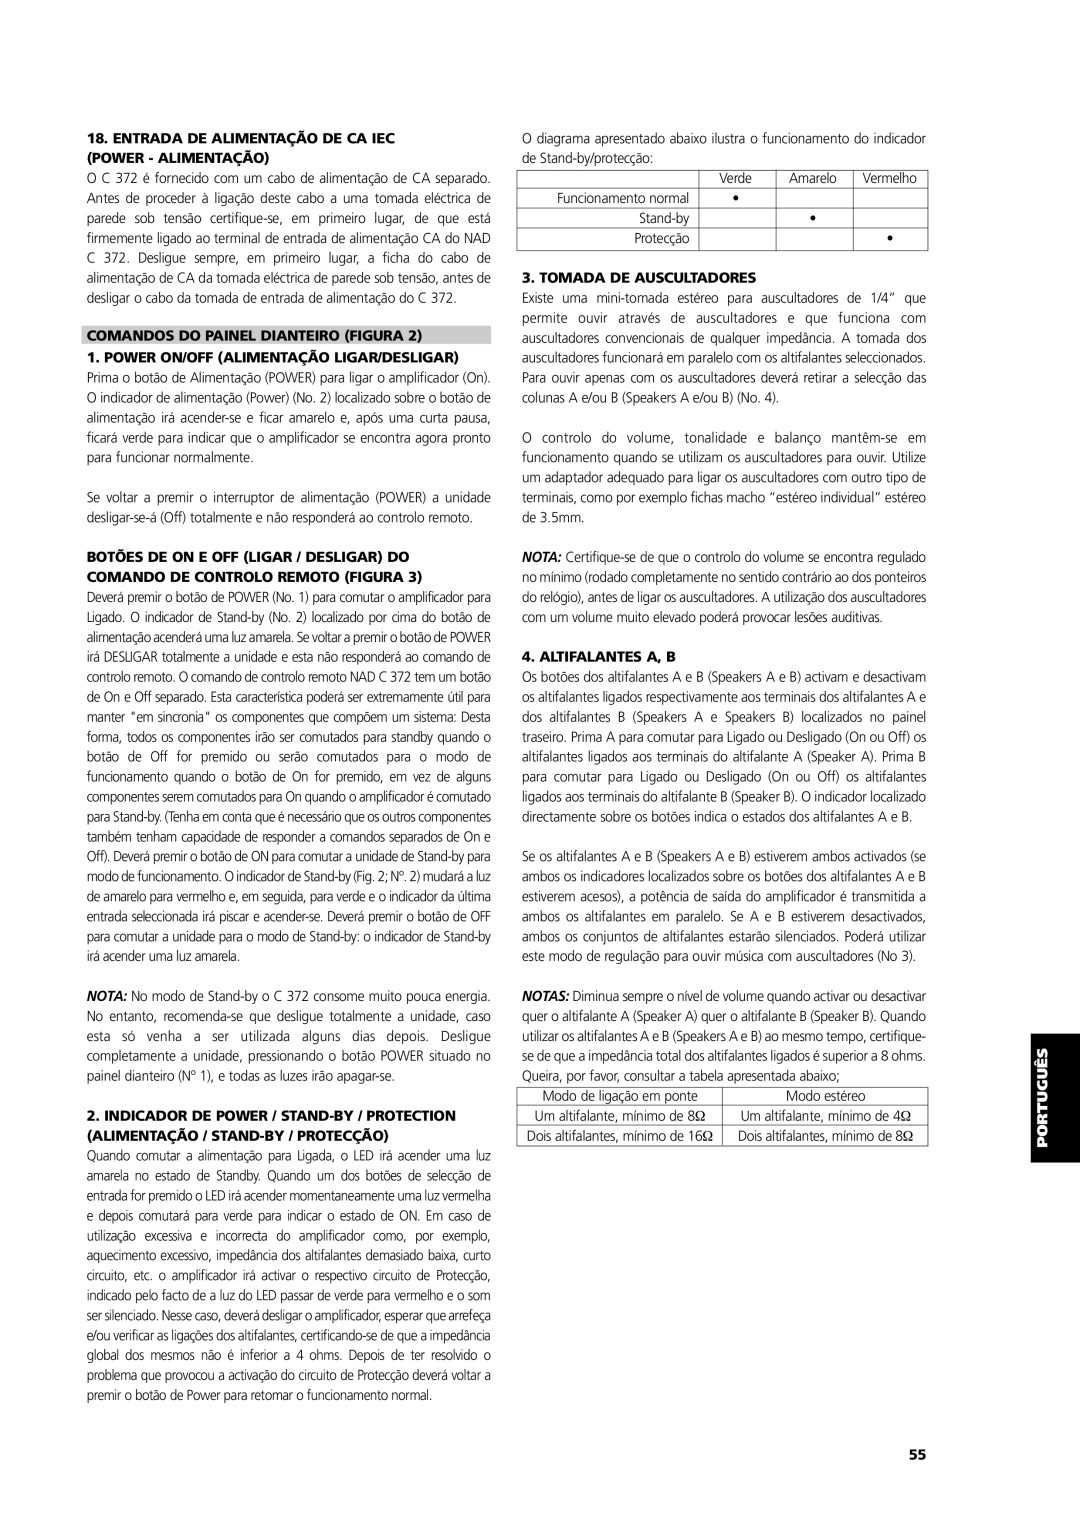 NAD C 372 owner manual Comandos Do Painel Dianteiro Figura, Tomada De Auscultadores, Altifalantes A, B, Svenska Português 